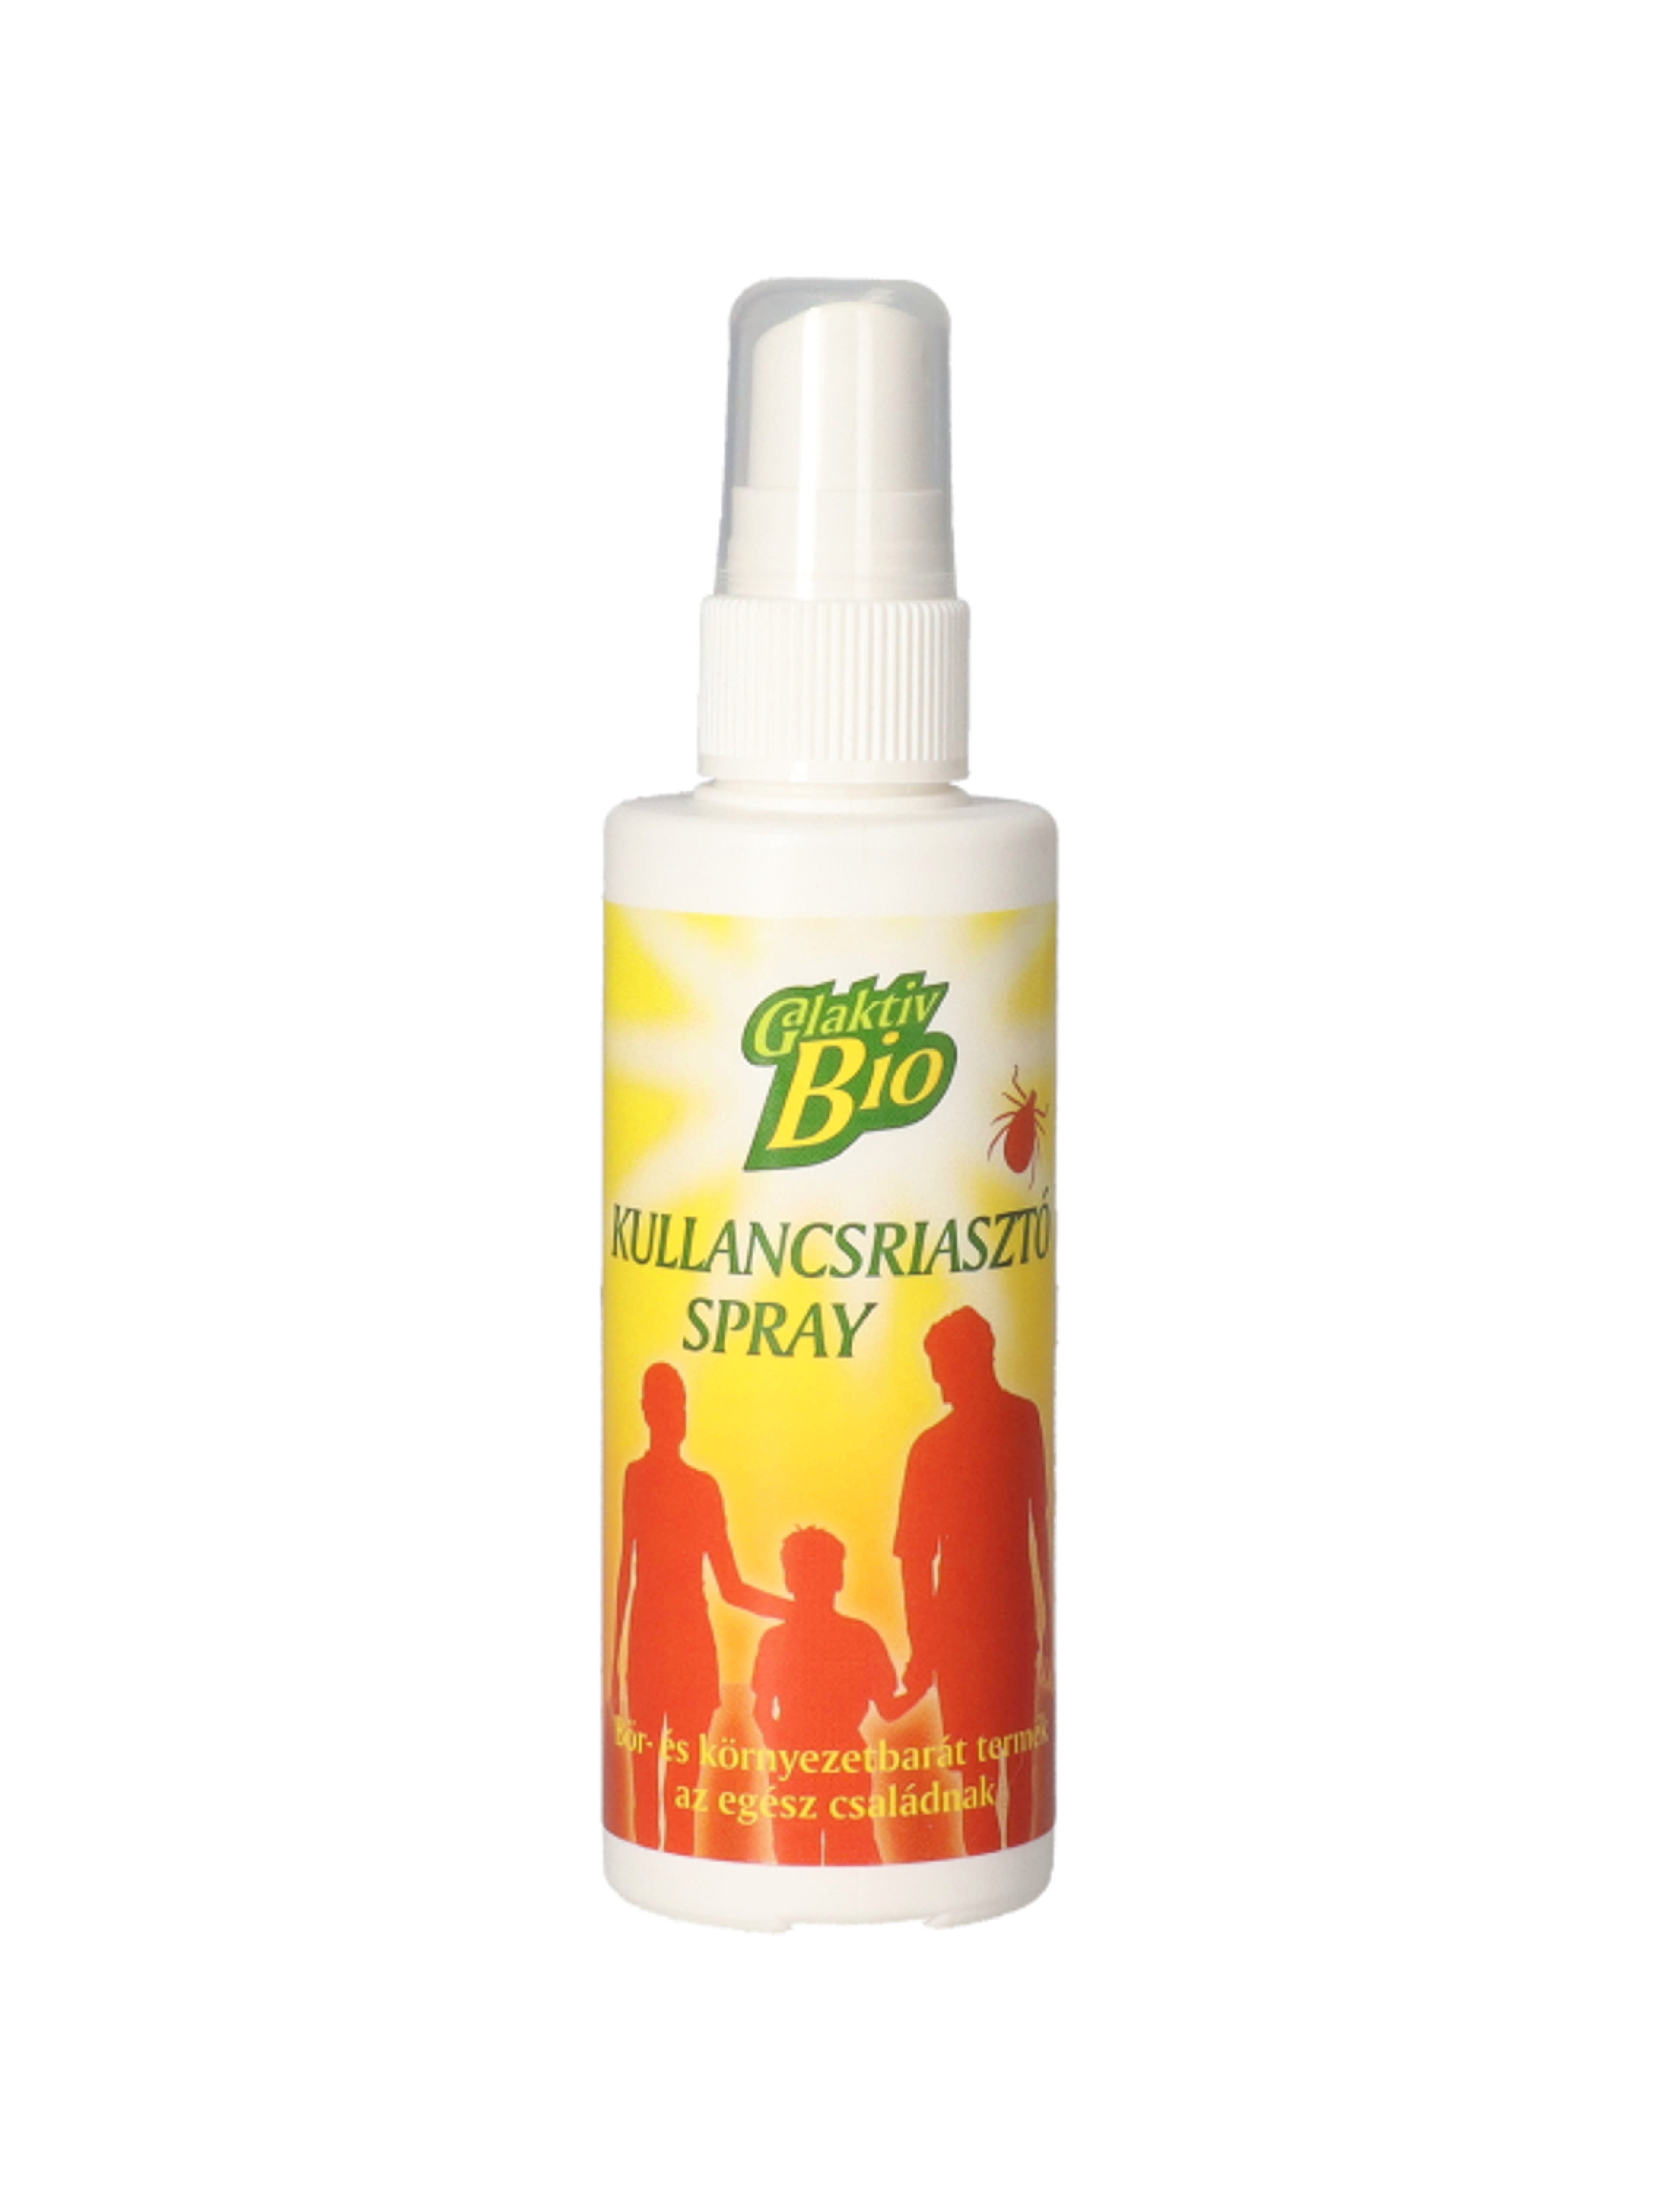 Galaktiv Bio Kullancsriasztó Spray - 100 ml